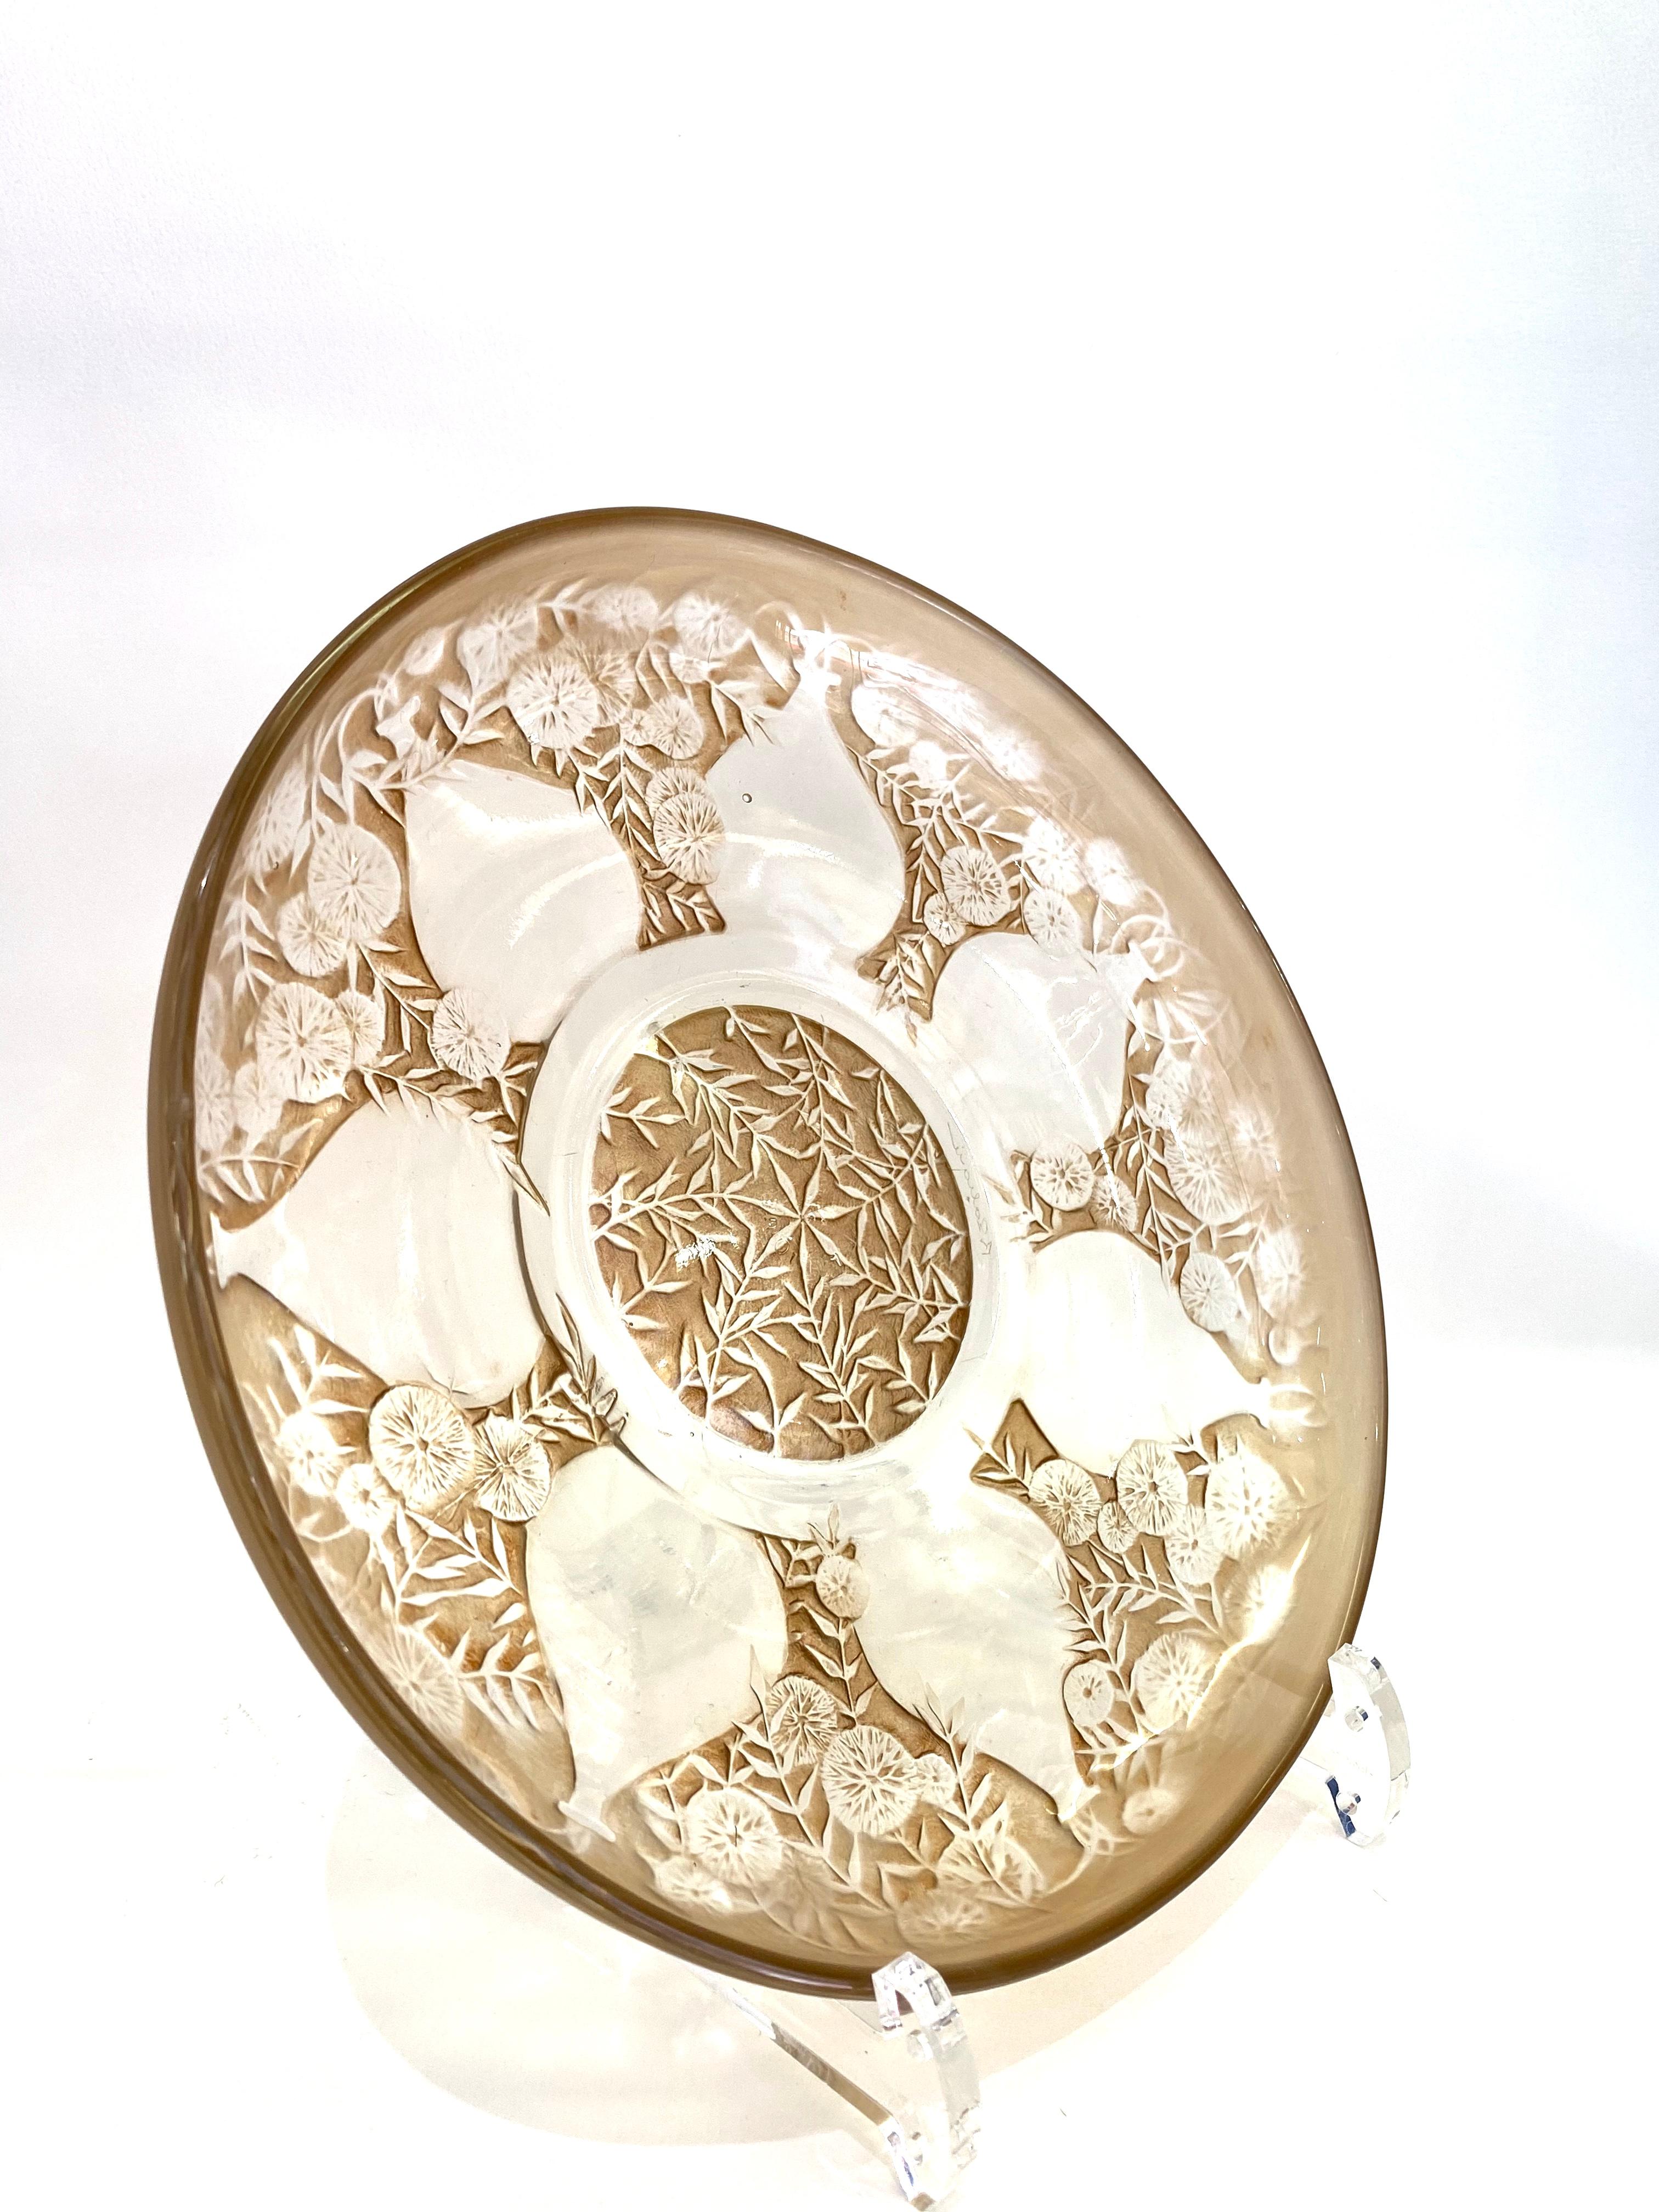 Art Deco 1921 Rene Lalique Vases Glass Plates Low Bowls Sepia Patina R.Lalique Set of 6